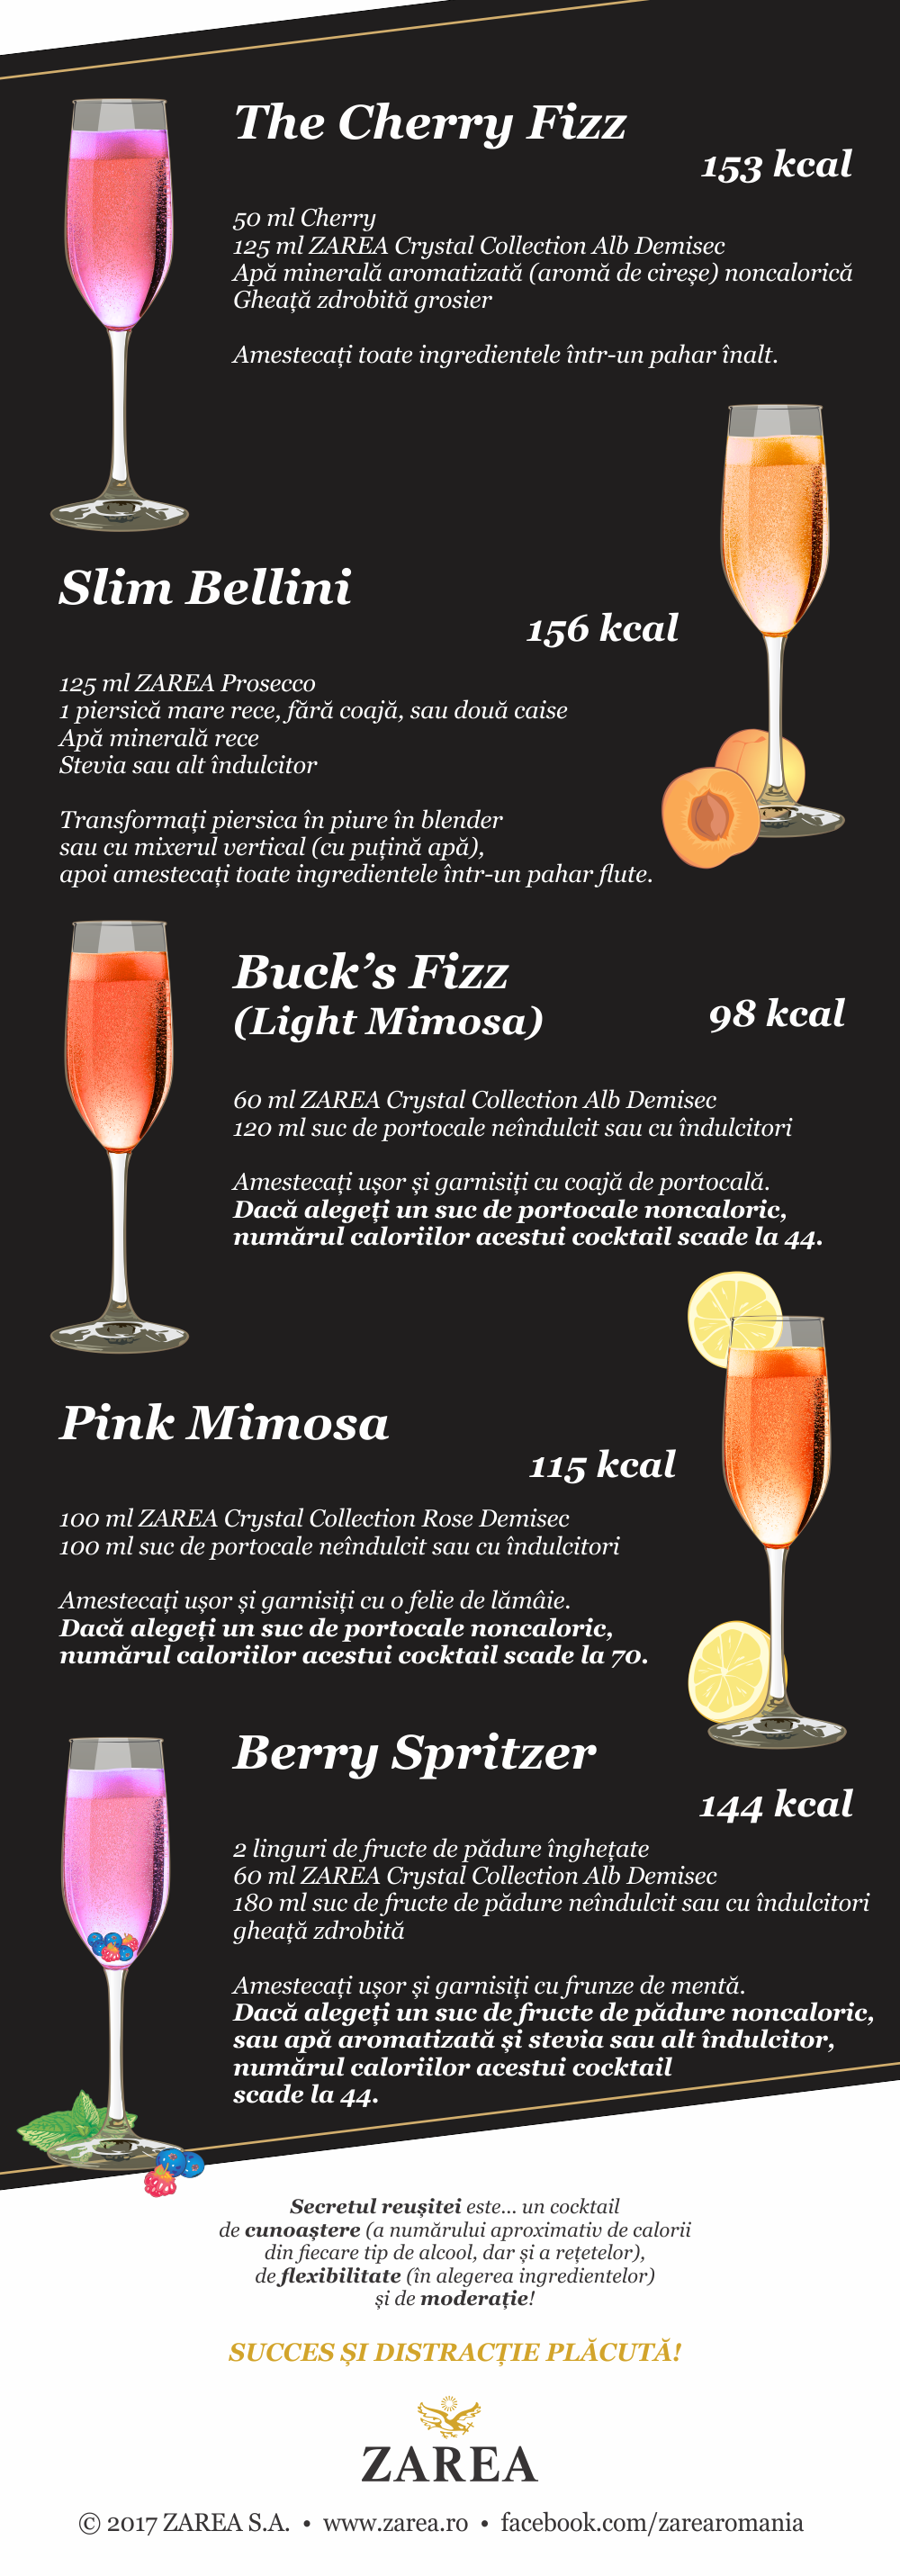 5 Cocktailuri cu mai puține calorii - de la Zarea.ro